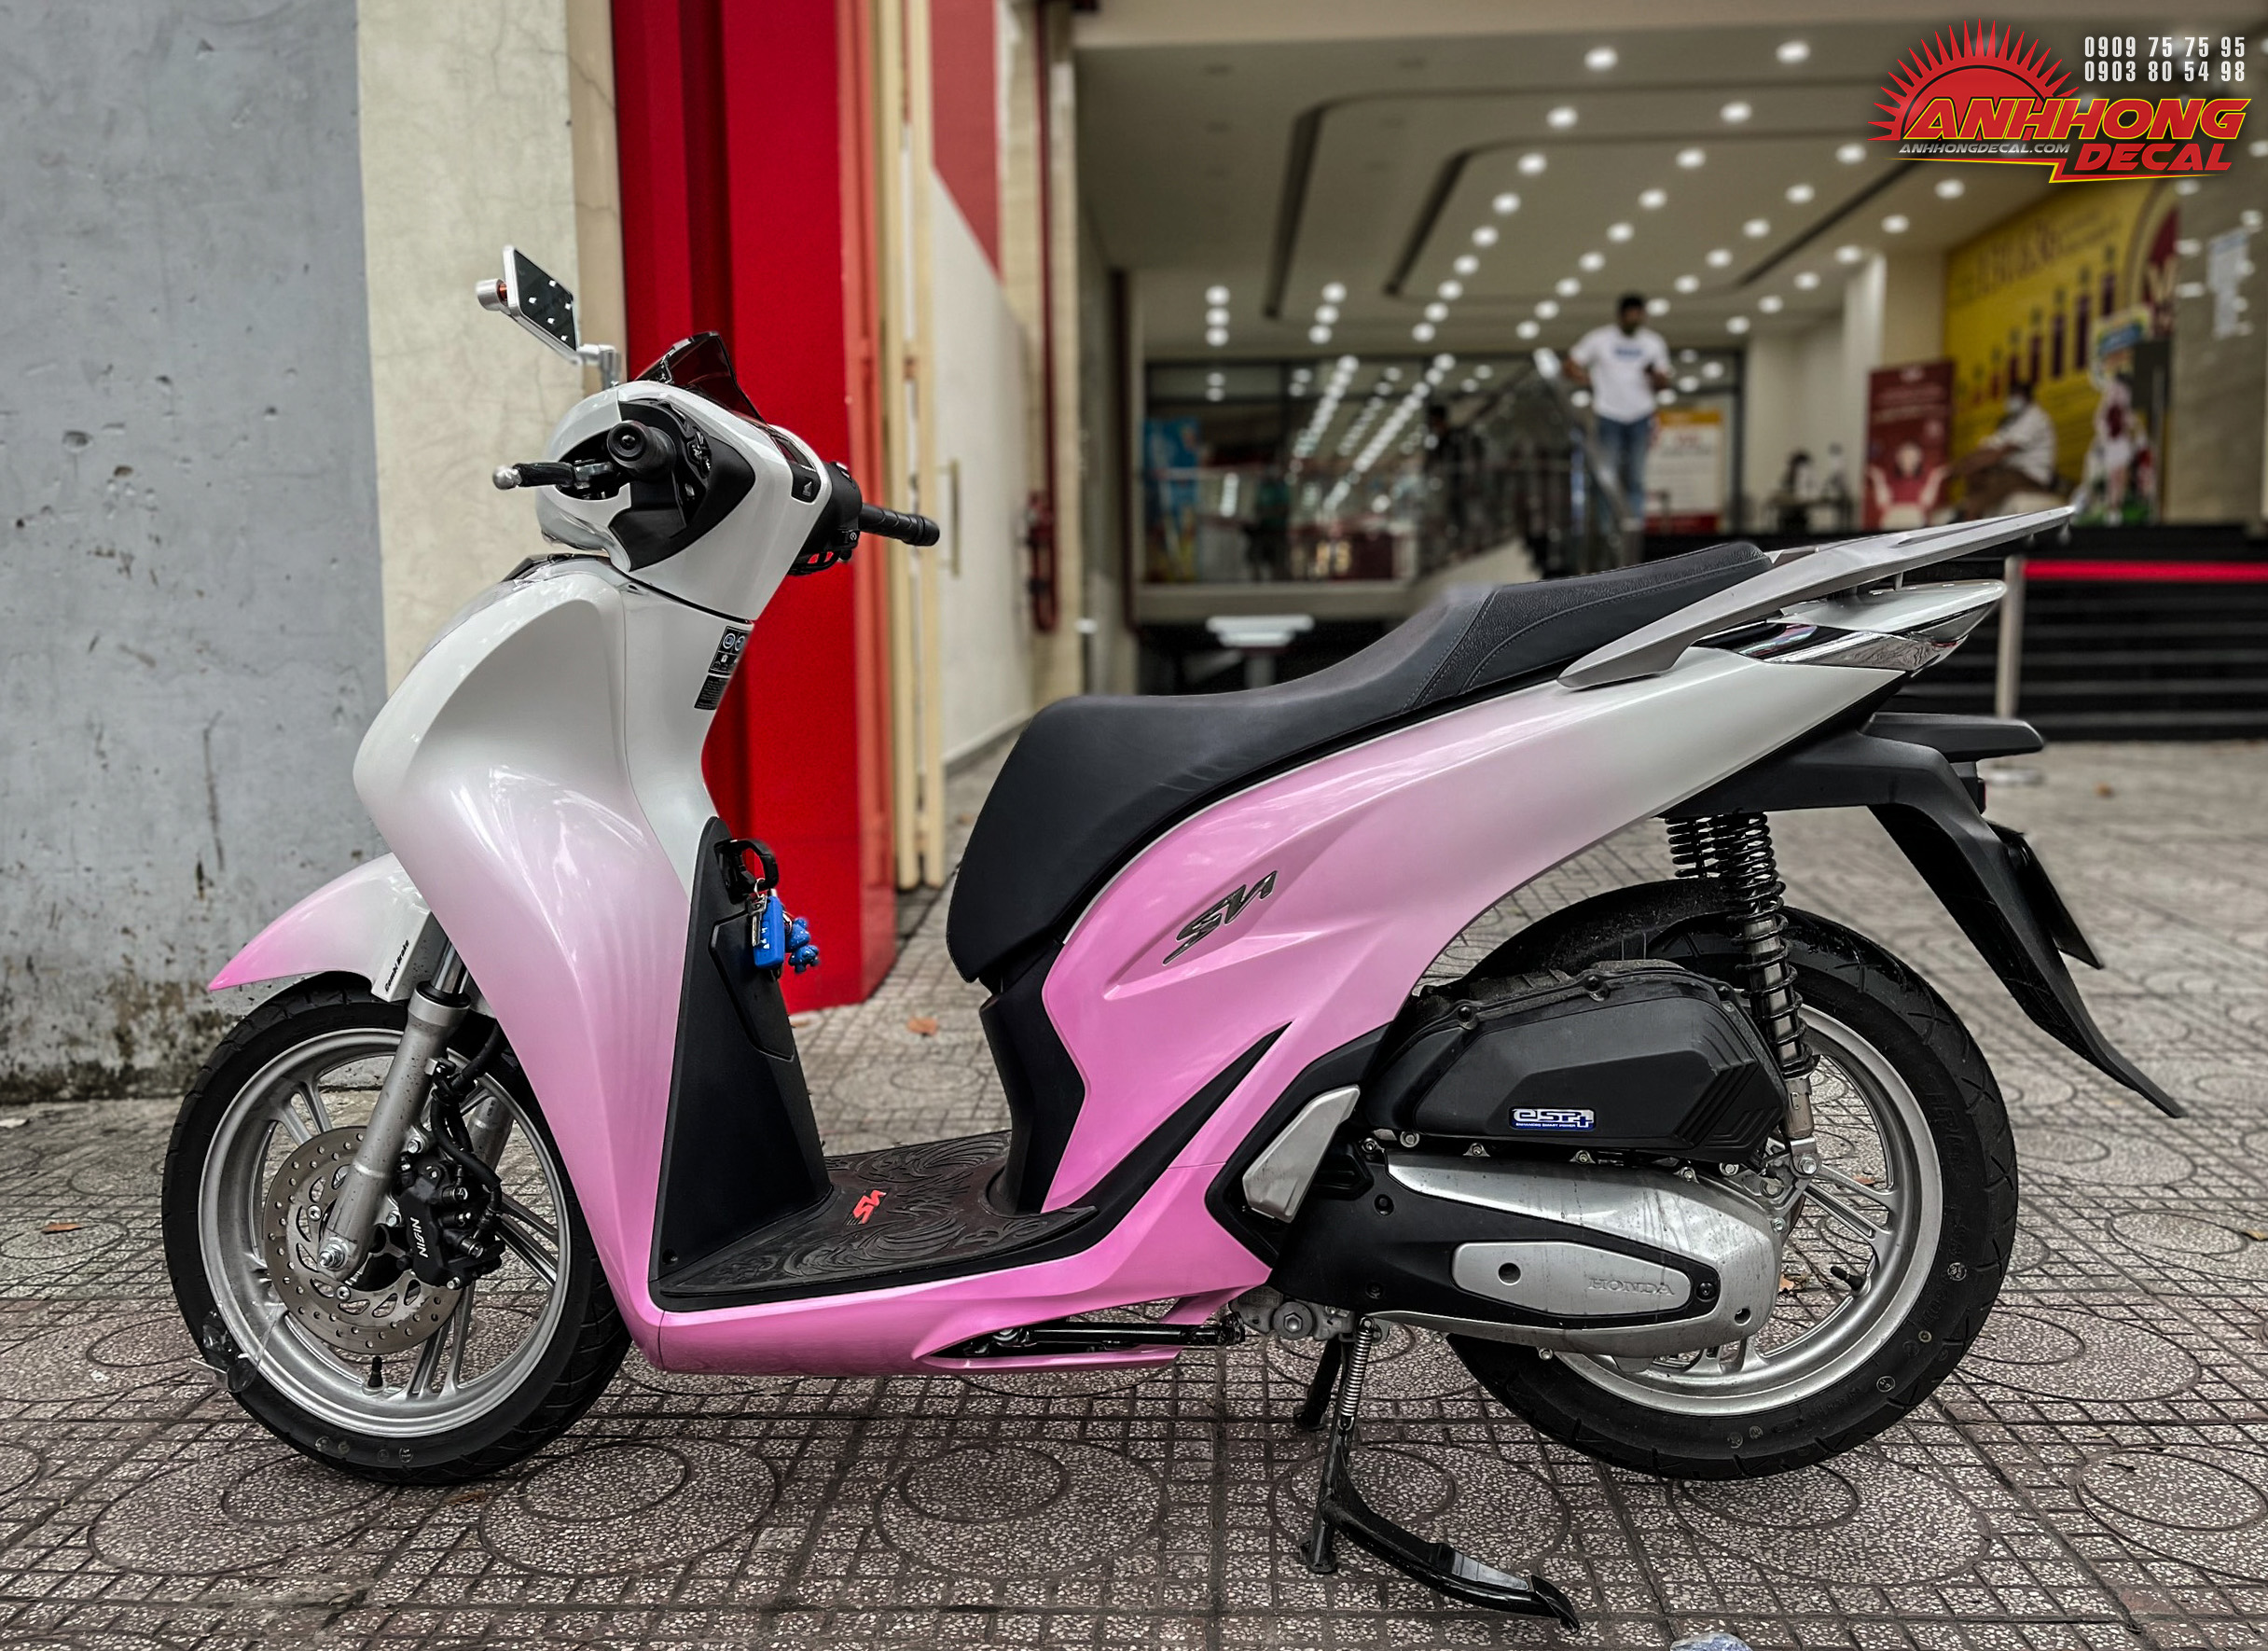 Mẫu sơn xe Honda Sh150i màu hồng cực đẹp  SƠN XE SÀI GÒN